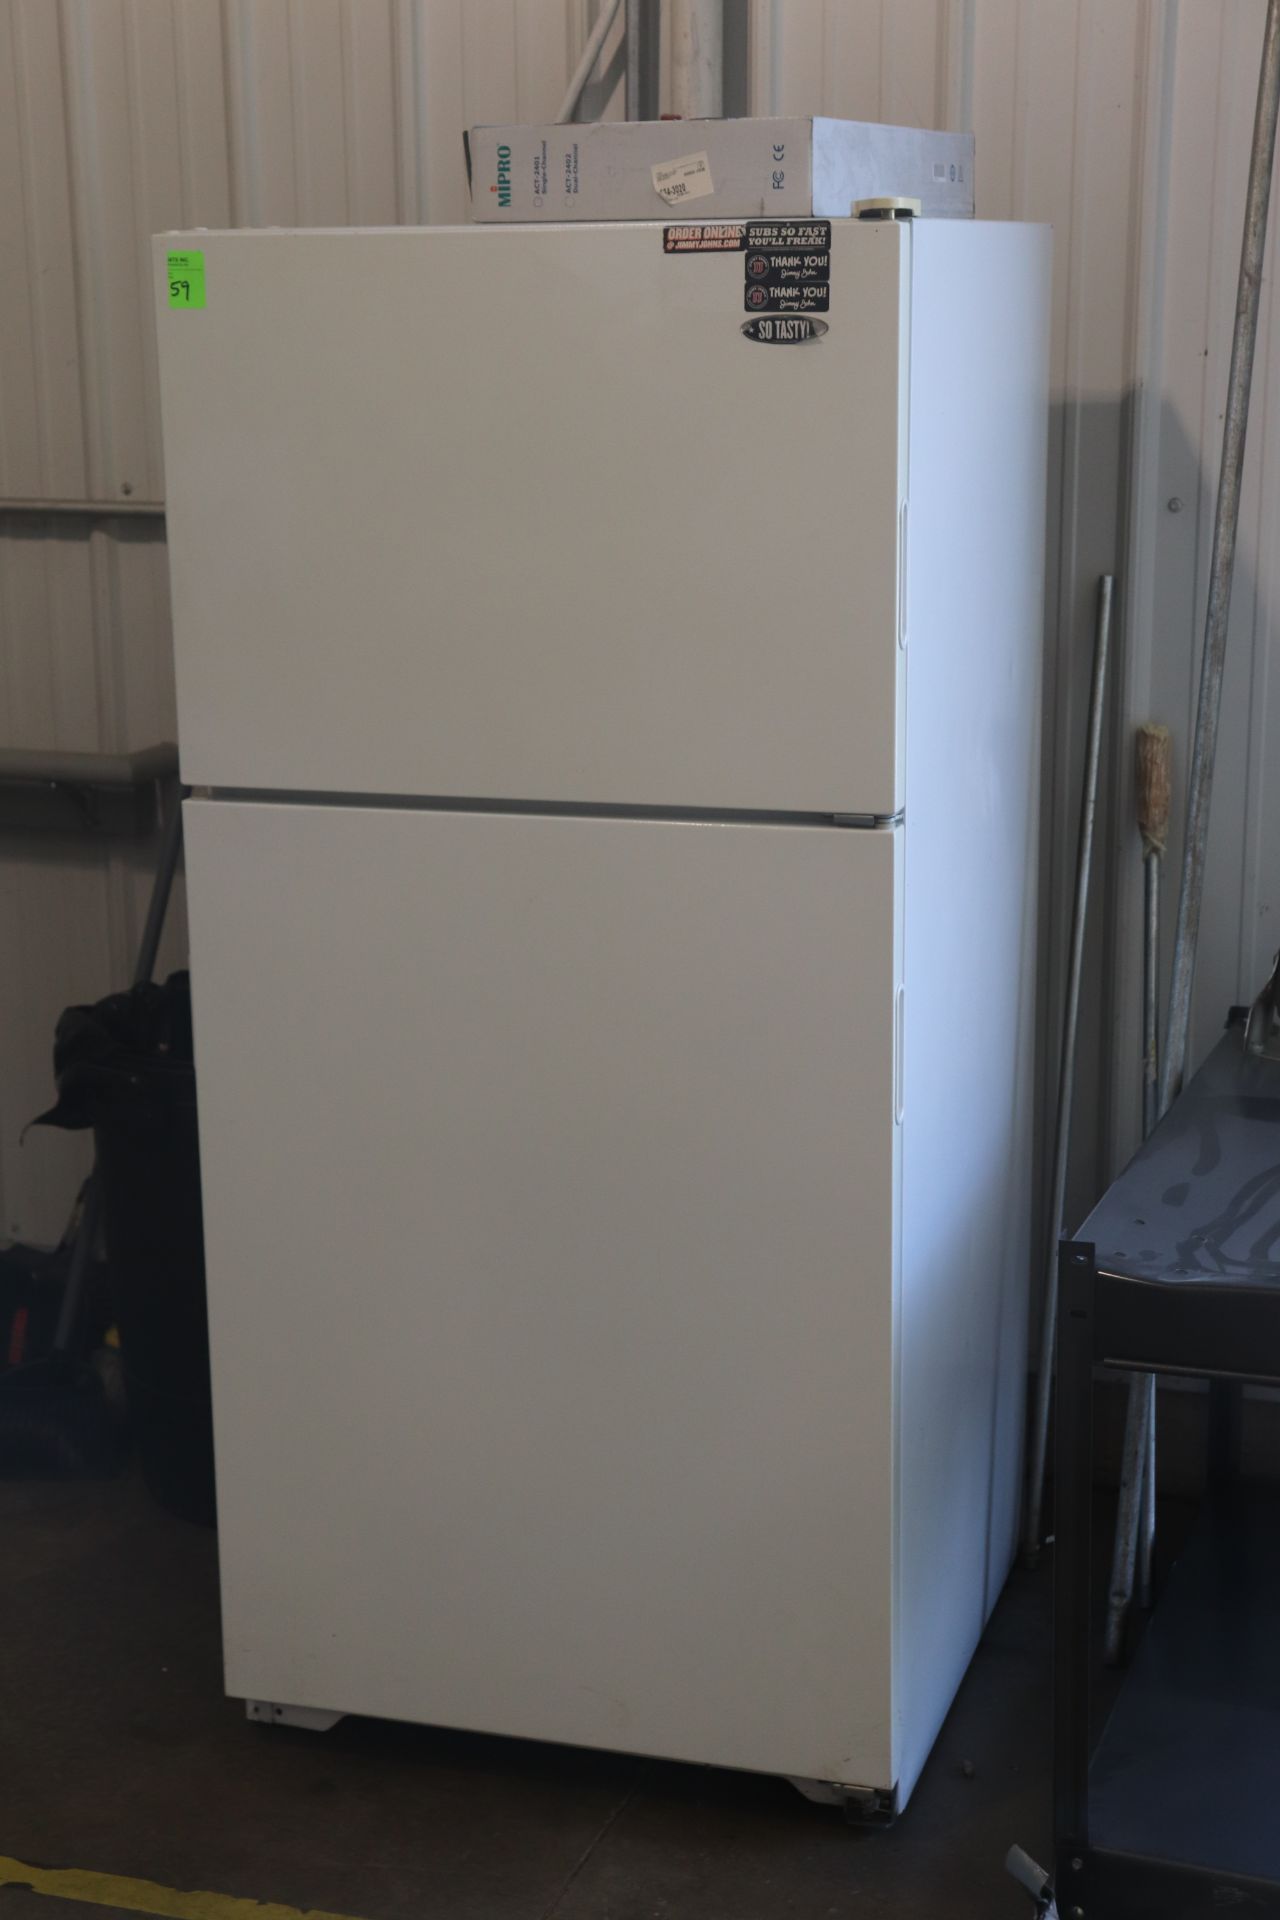 Haier model HTE14 residential refrigerator